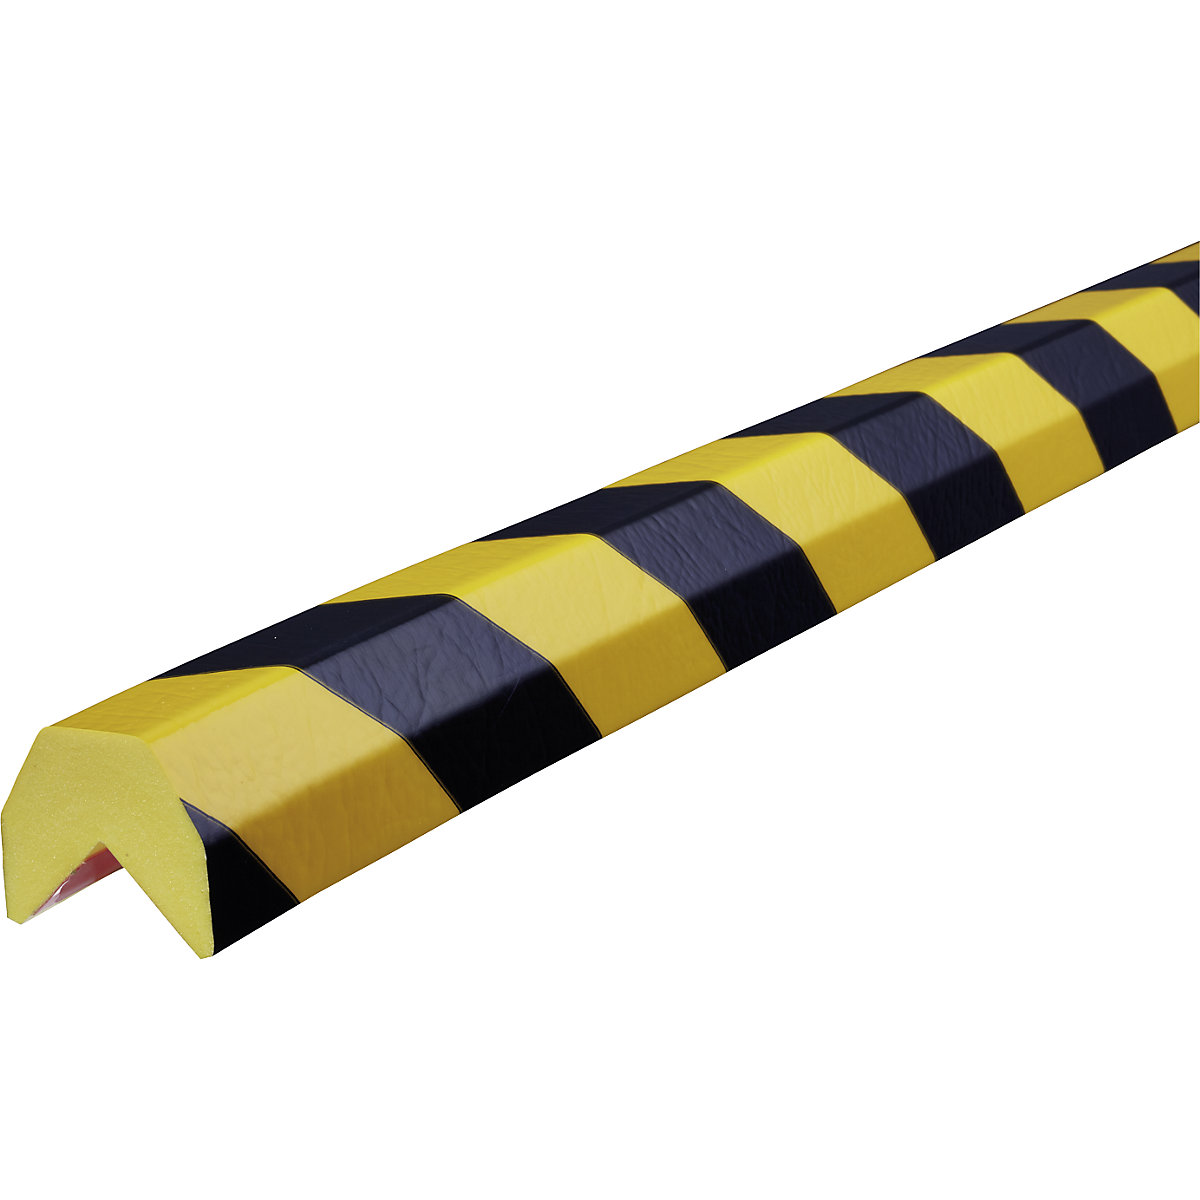 Protecție pentru colț Knuffi® – SHG, tip AA, 1 rolă de 50 m, negru / galben-10